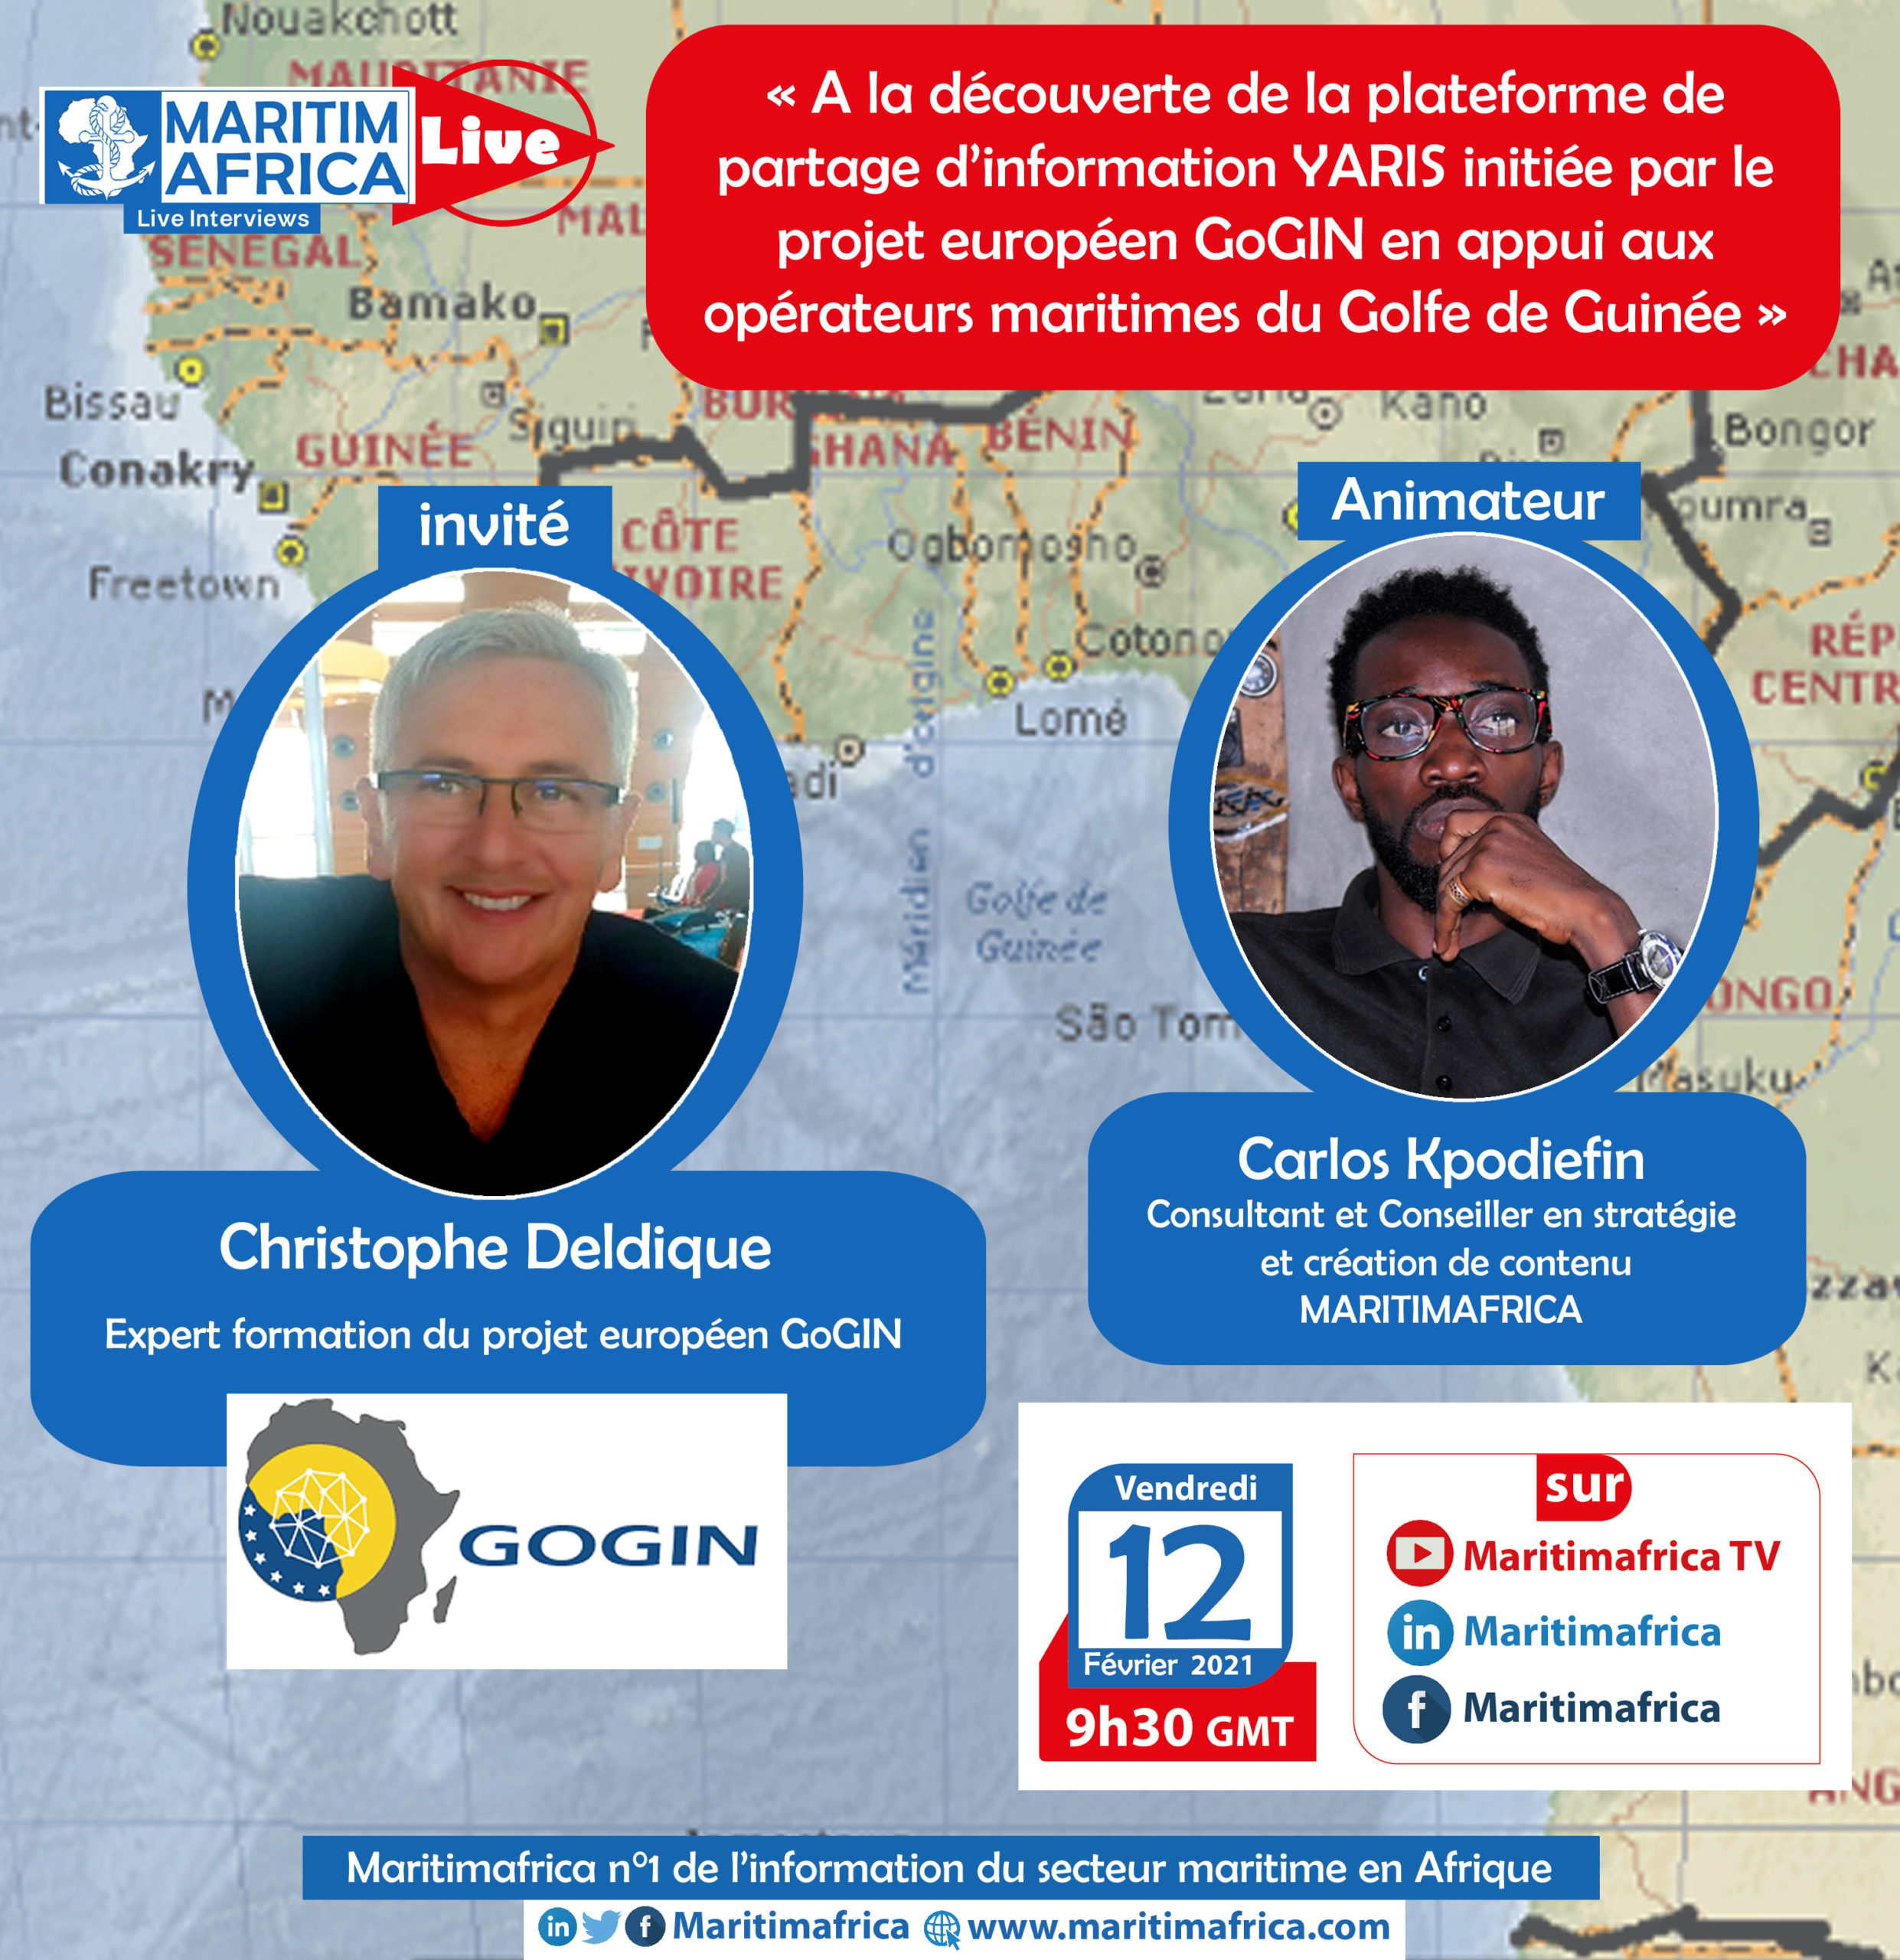 Maritimafrica Live : « A la découverte de la plateforme de partage d’information YARIS initiée par le projet européen GoGIN en appui aux opérateurs maritimes du Golfe de Guinée »